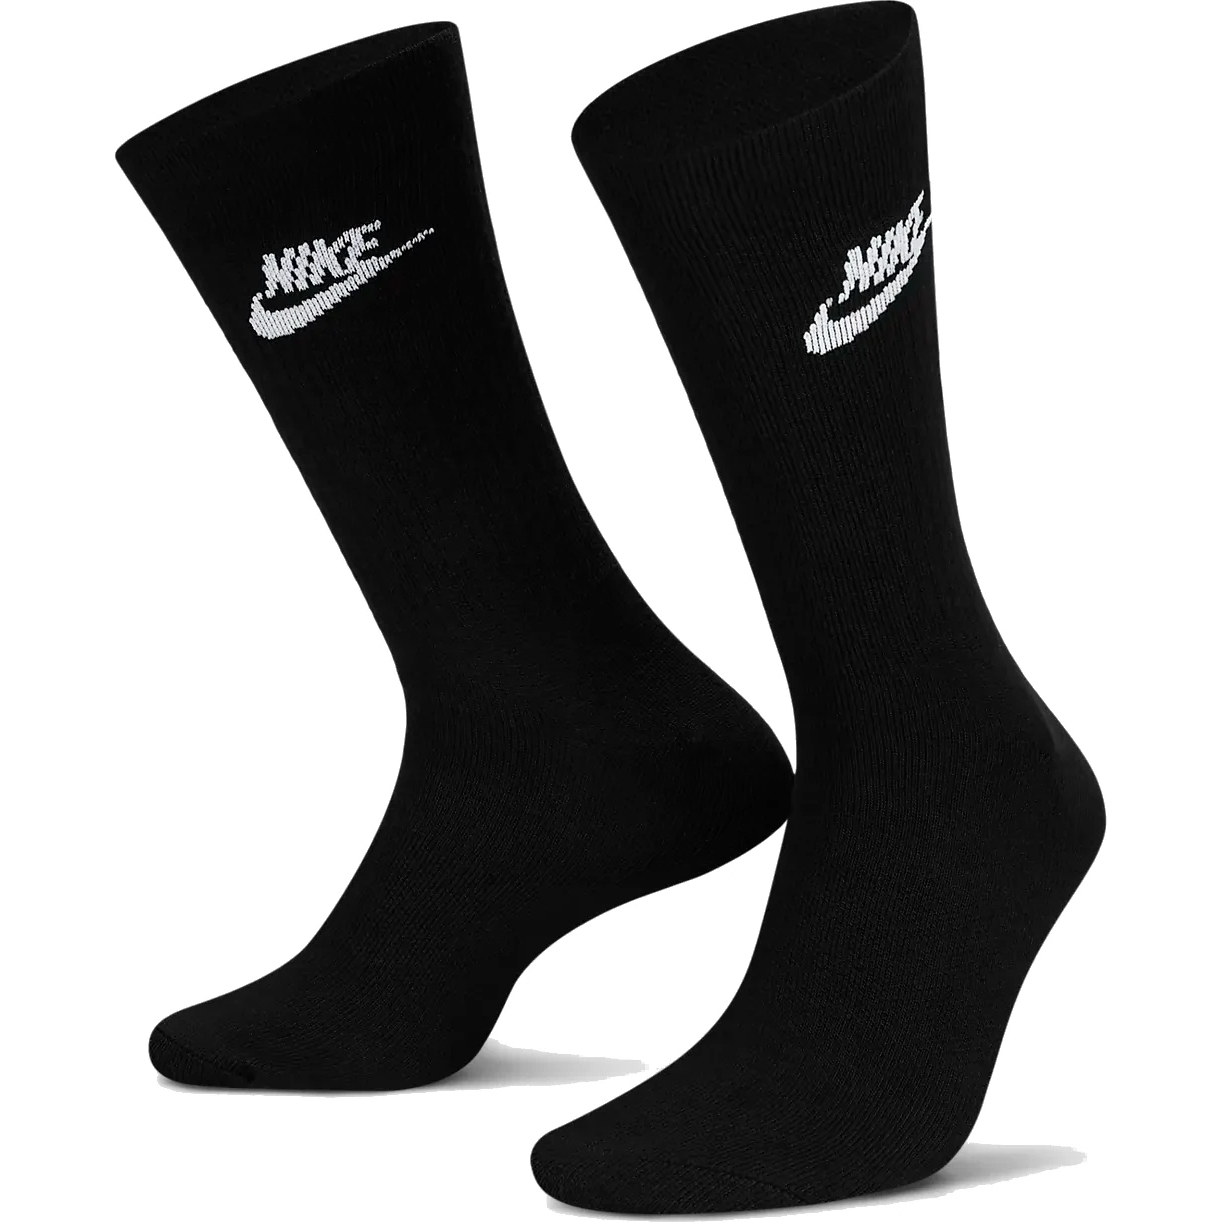 Produktbild von Nike Sportswear Everyday Essential Crew Socken (3 Paar) - schwarz/weiß DX5025-010